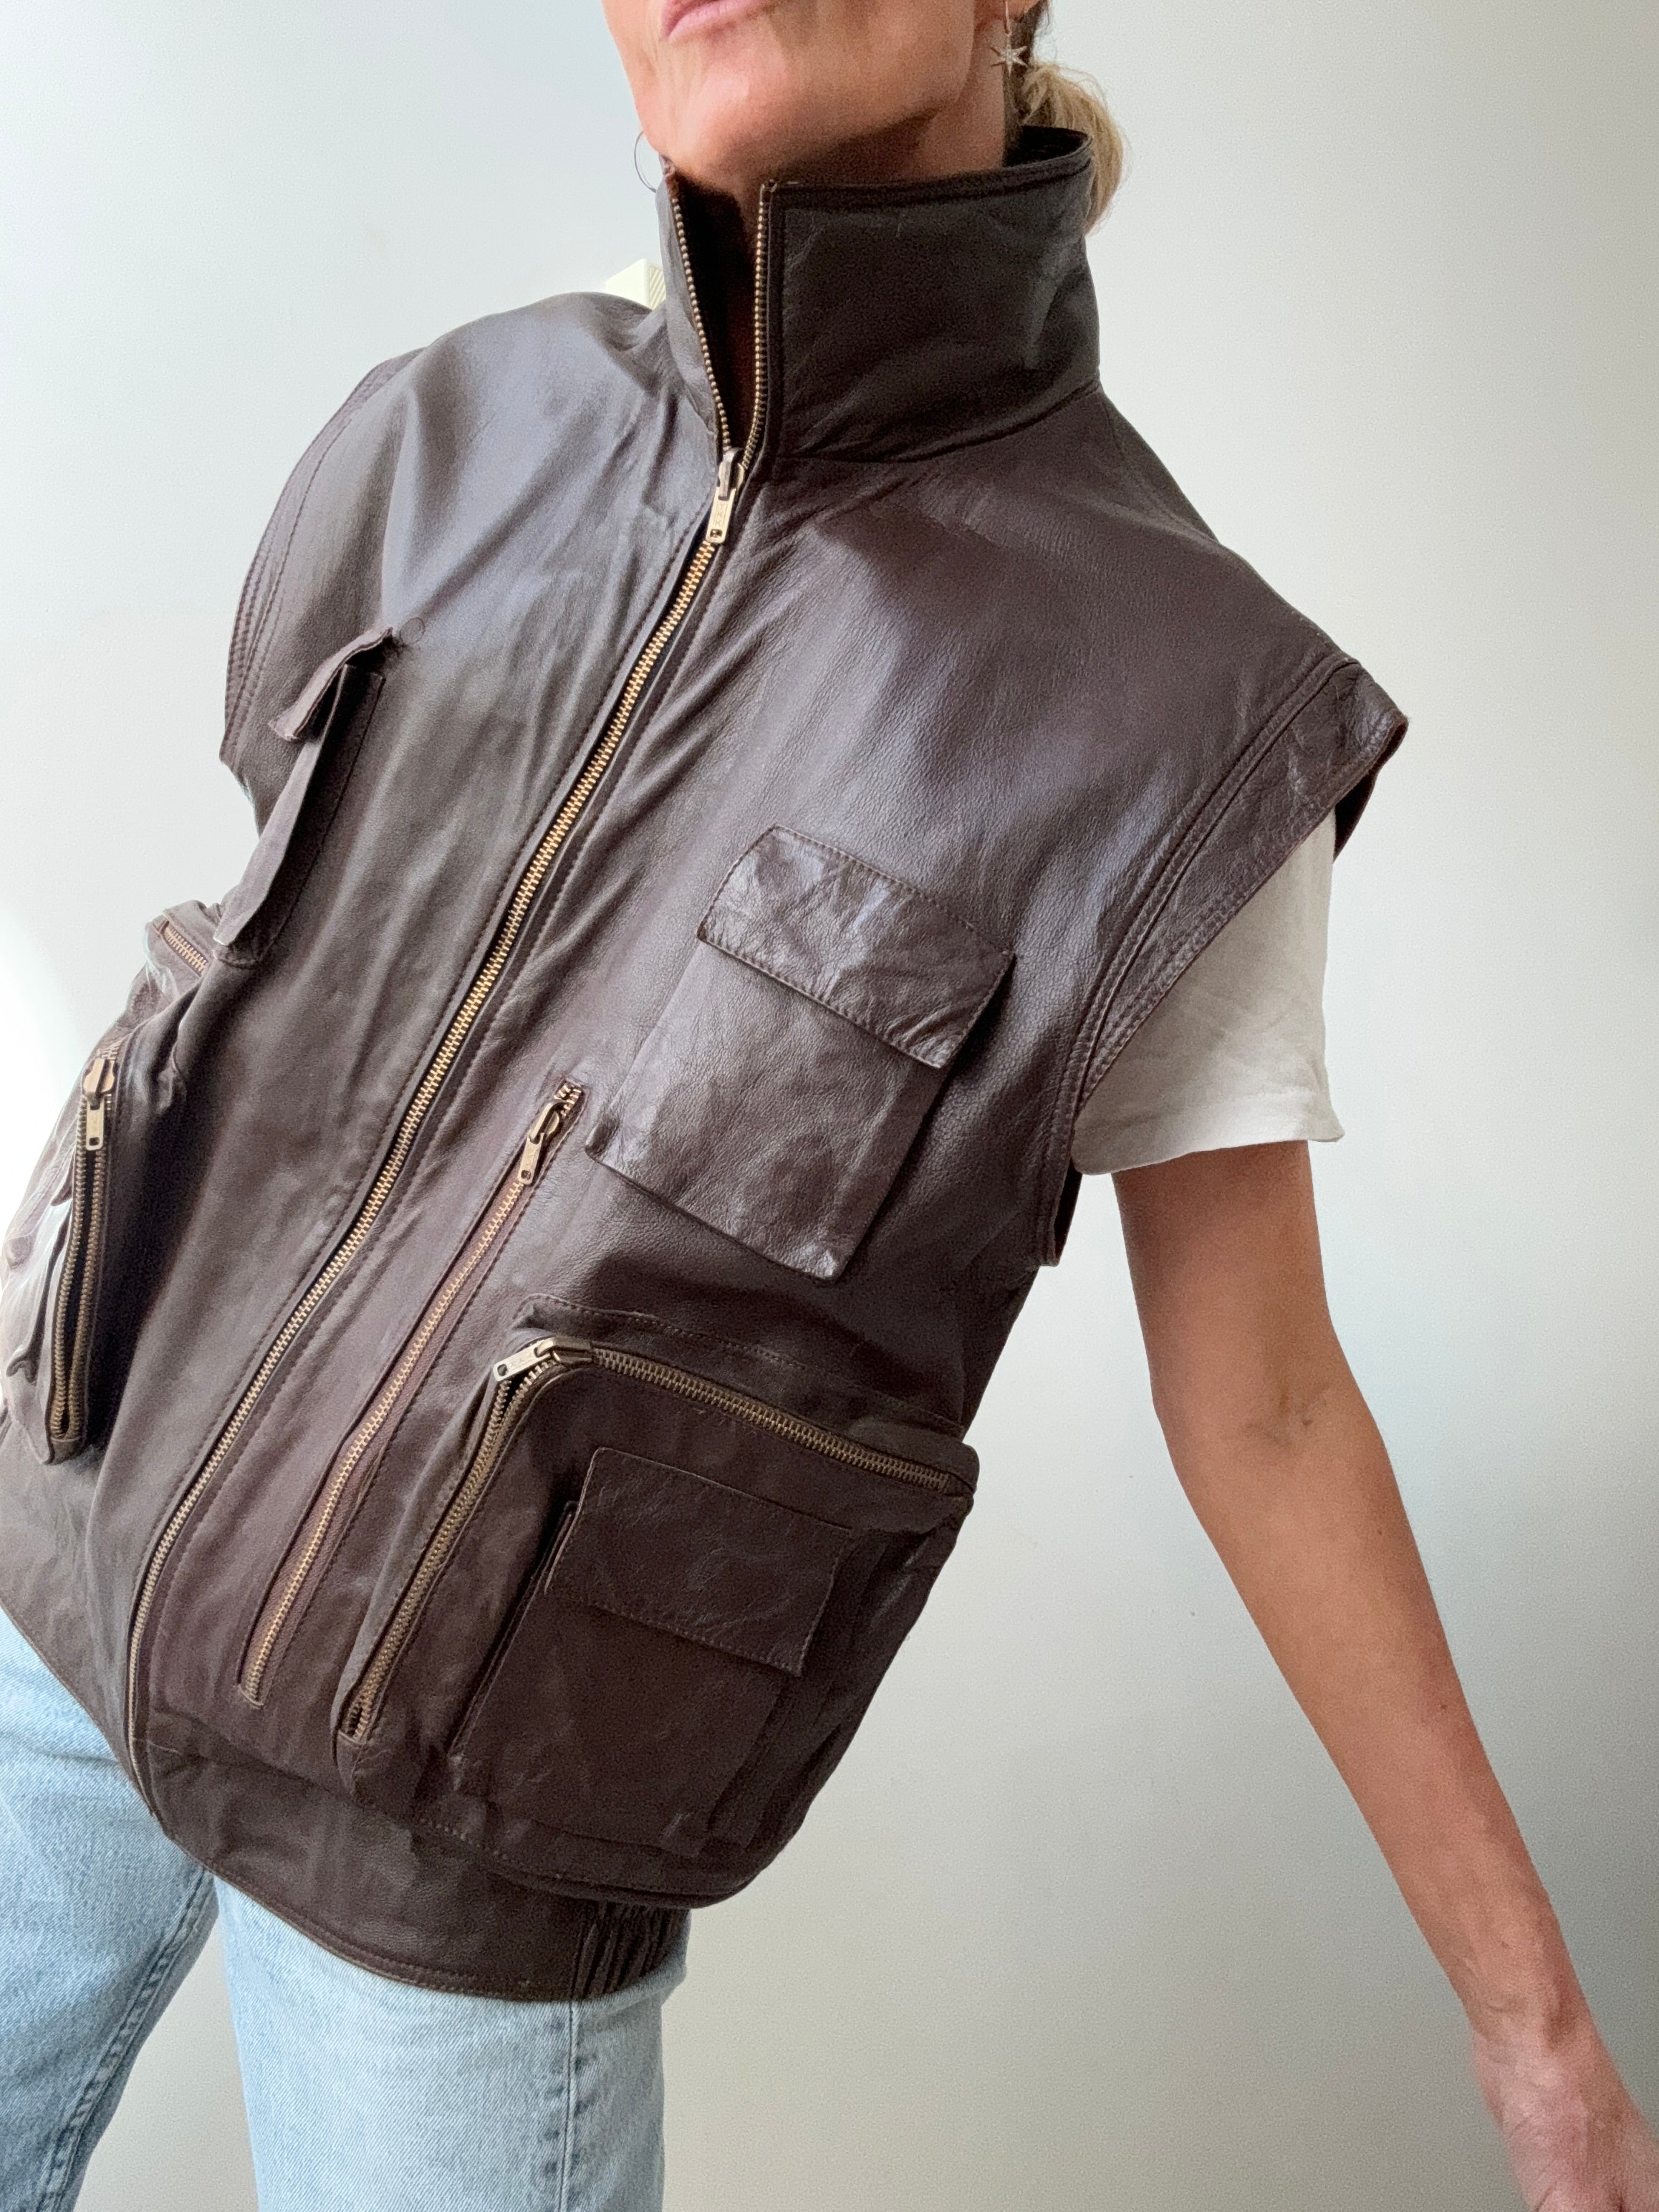 Future Nomads Vests Large Vintage Leather Chocolate Vest